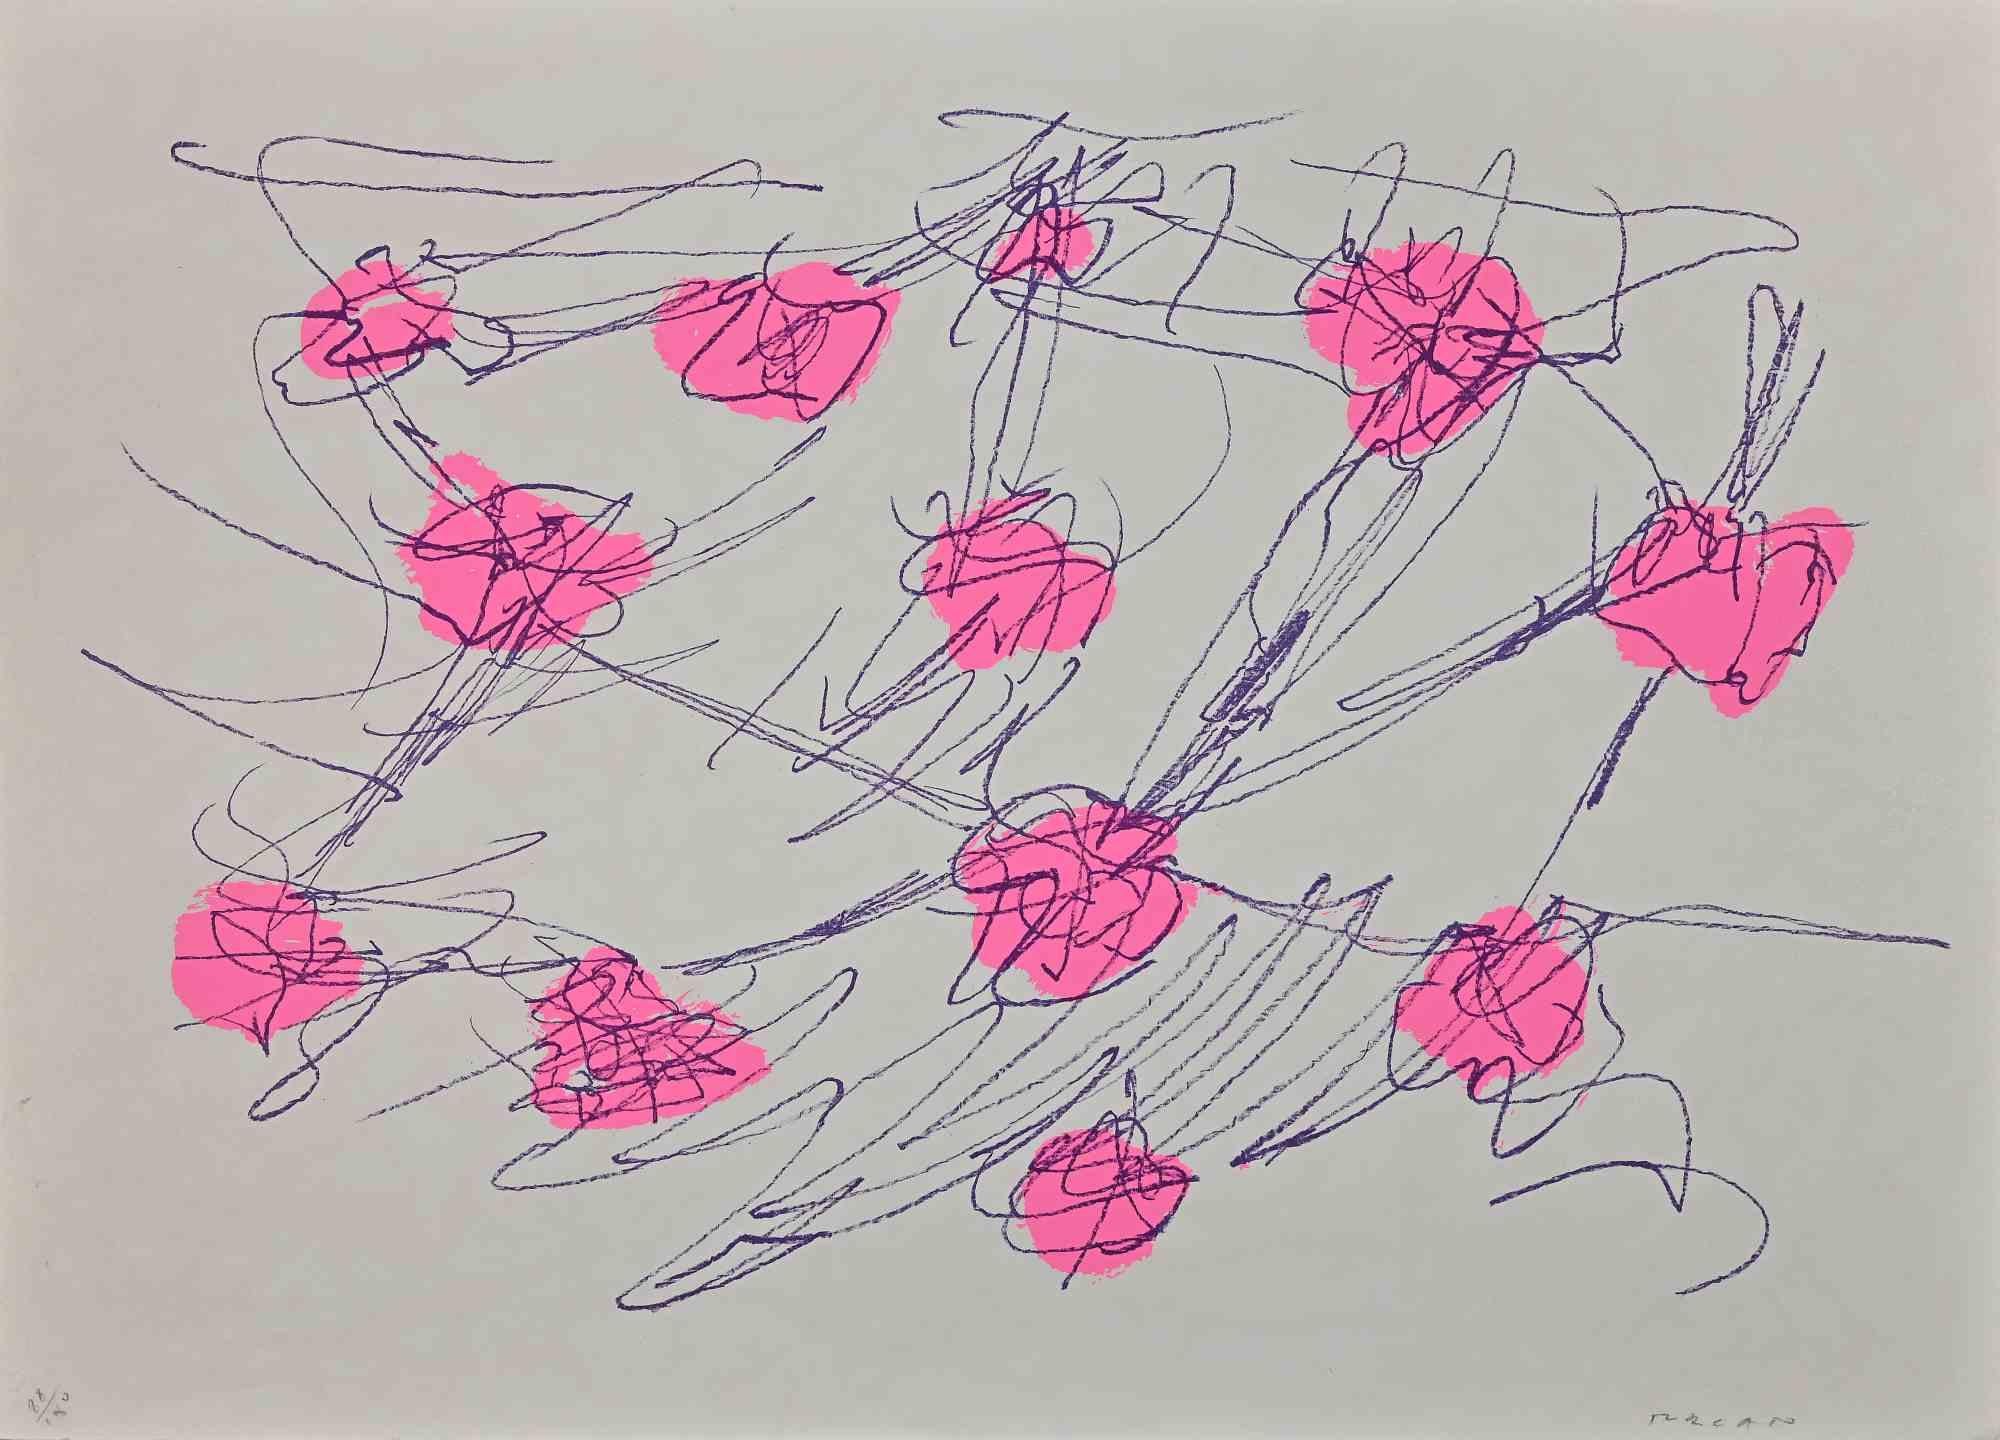 Abstract Composition est une sérigraphie colorée réalisée par l'artiste contemporain Giulio Turcato dans les années 1970.

Signé à la main au crayon en bas à droite.

Numéroté dans la marge inférieure gauche, édition 88/100.

Bonnes